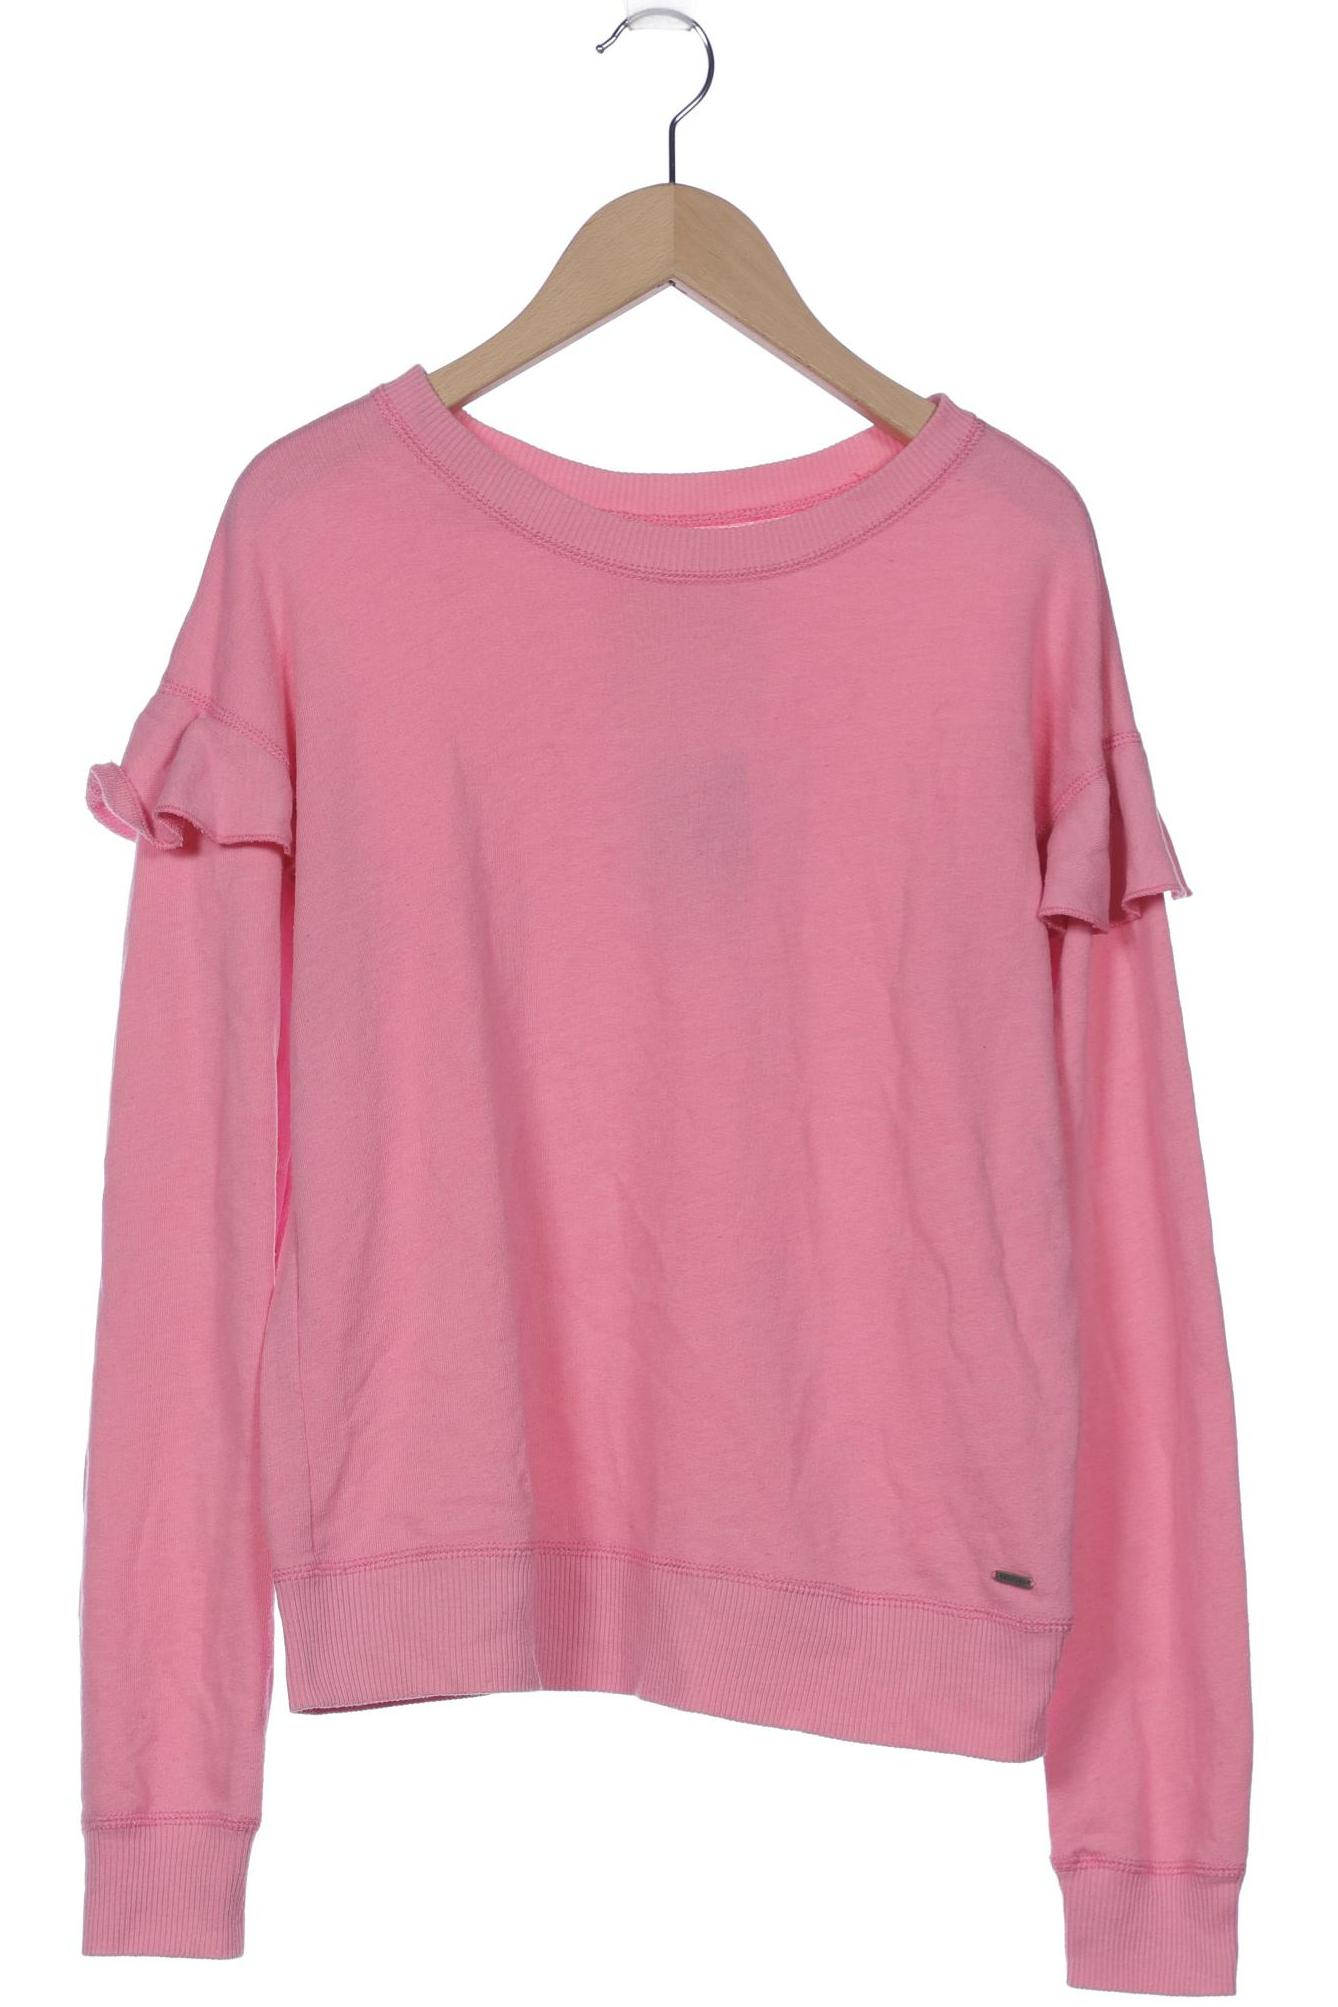 Hollister Damen Sweatshirt, pink, Gr. 34 von Hollister